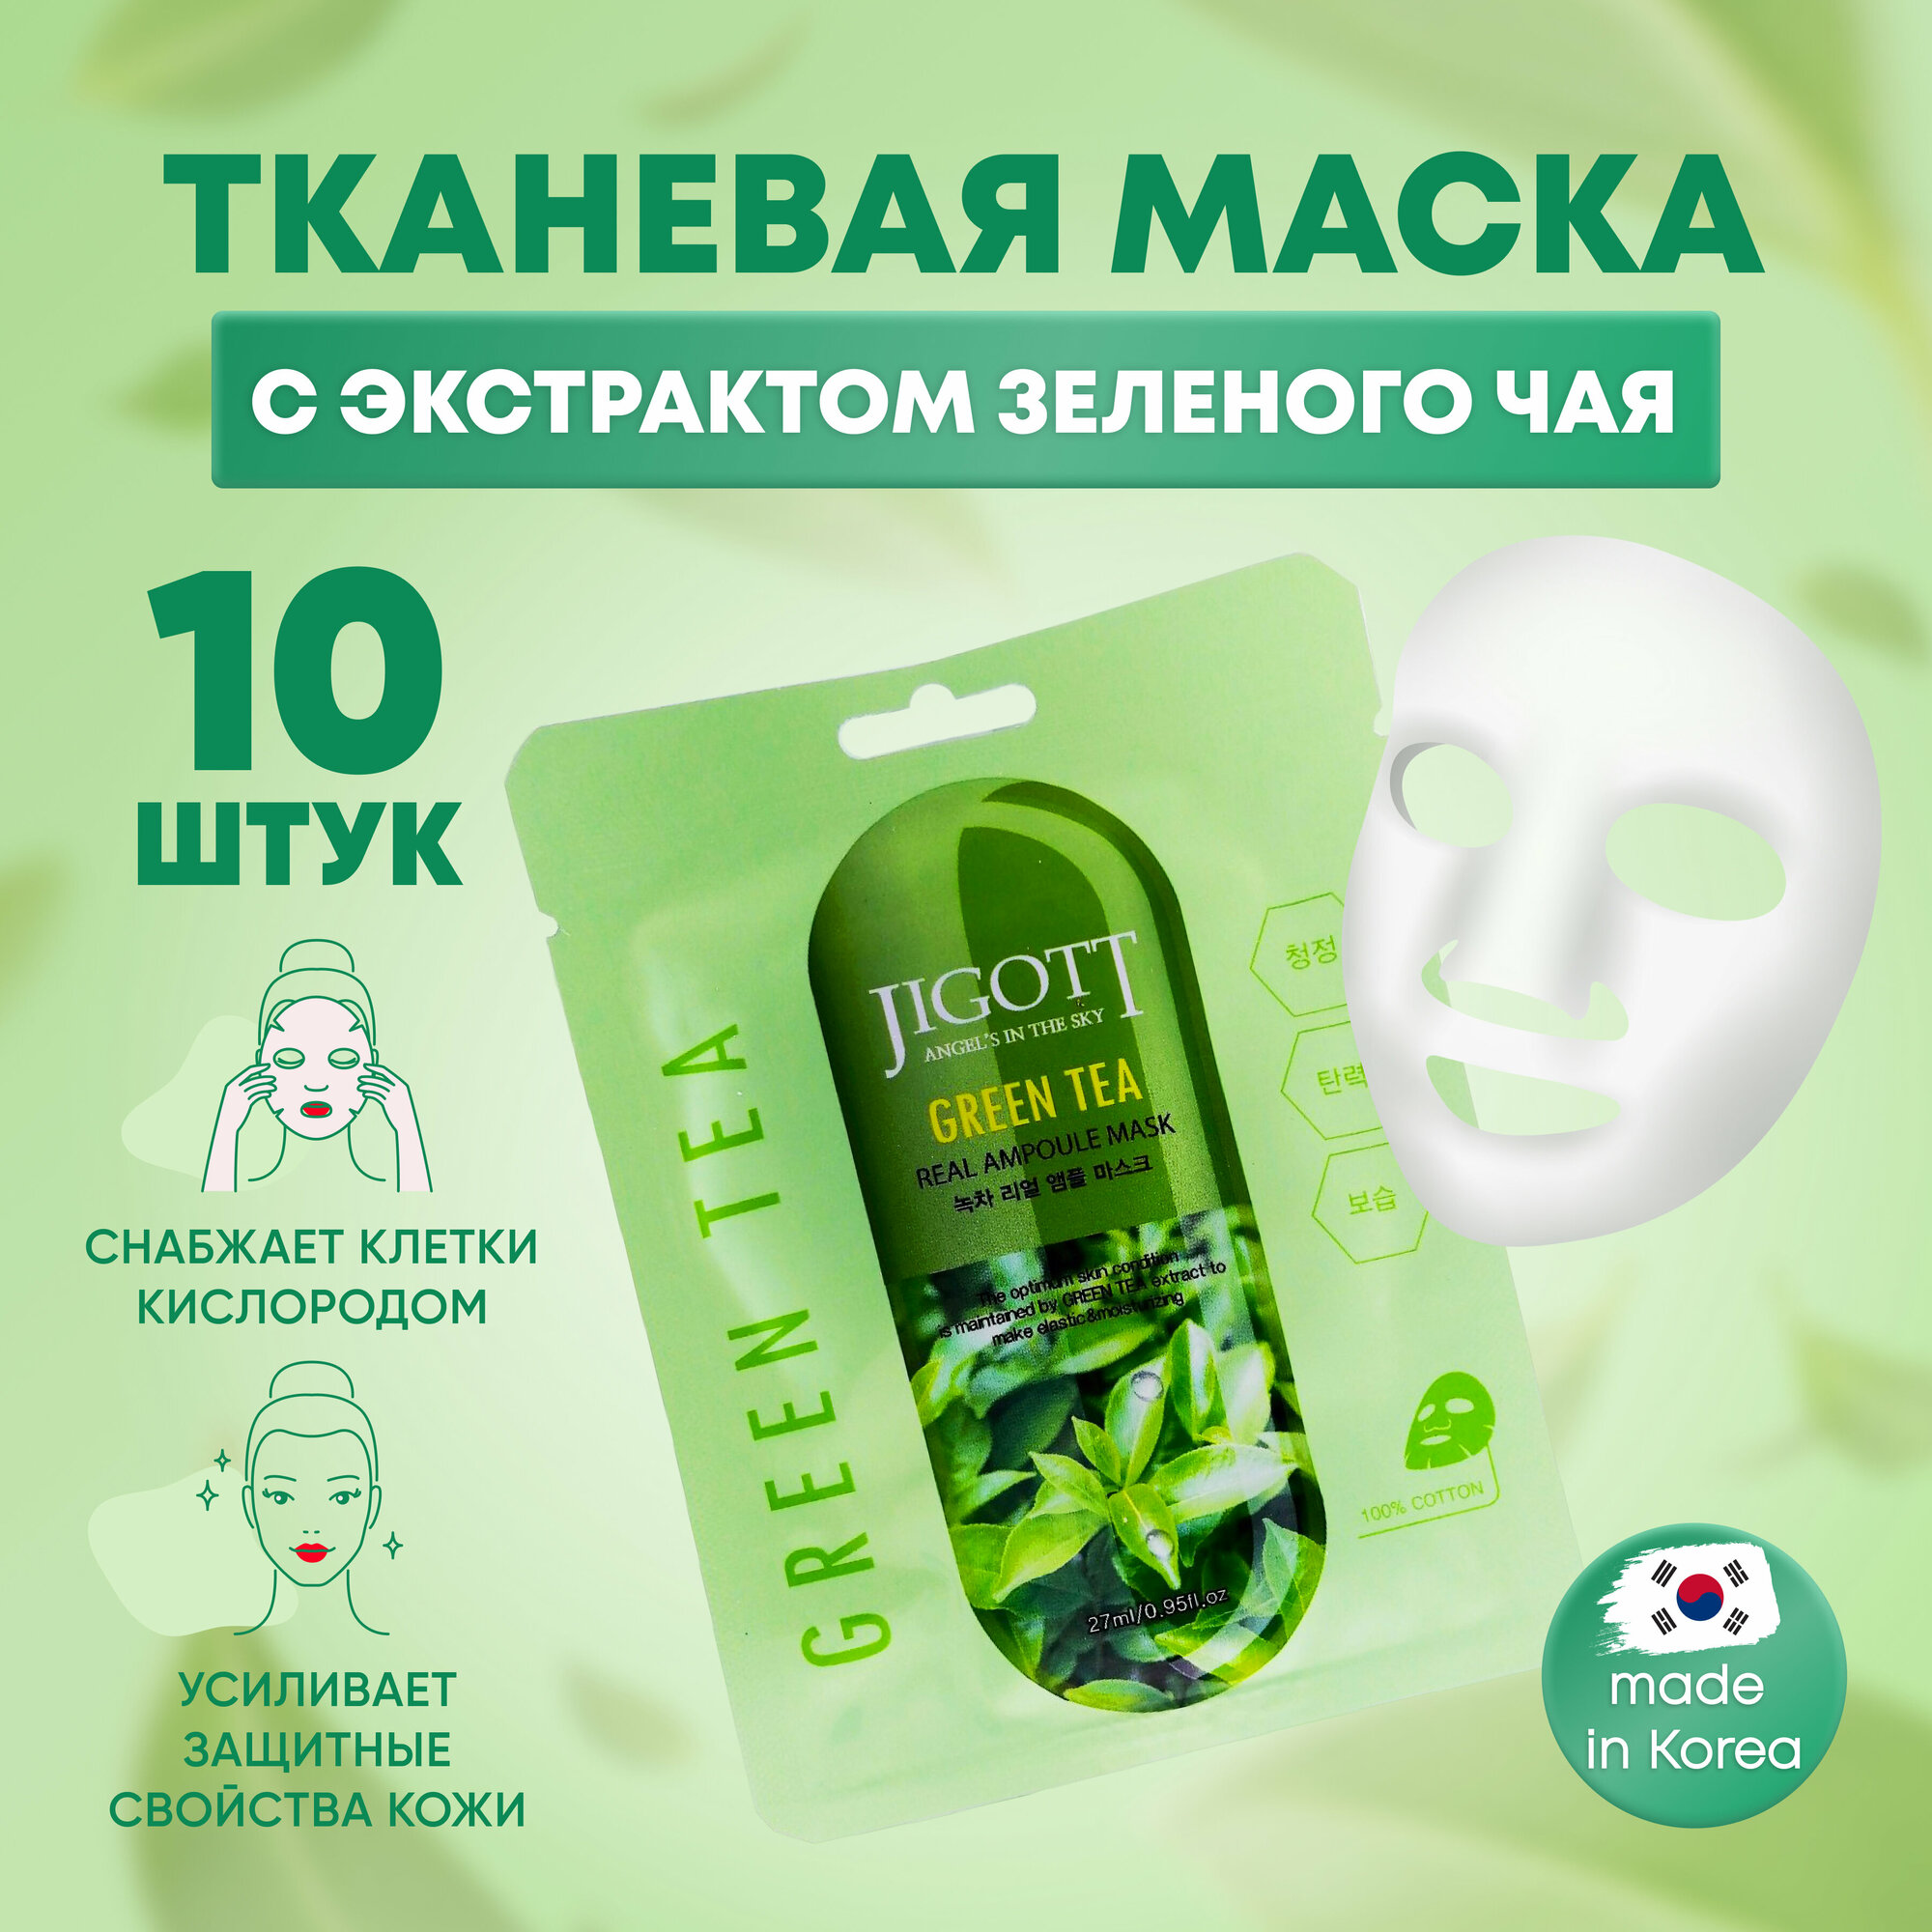 Jigott Маски для лица тканевые набор 10 шт по 27 мл с экстрактом зеленого чая Green Tea Real Ampoule Mask / Корейская косметика для ухода за лицом